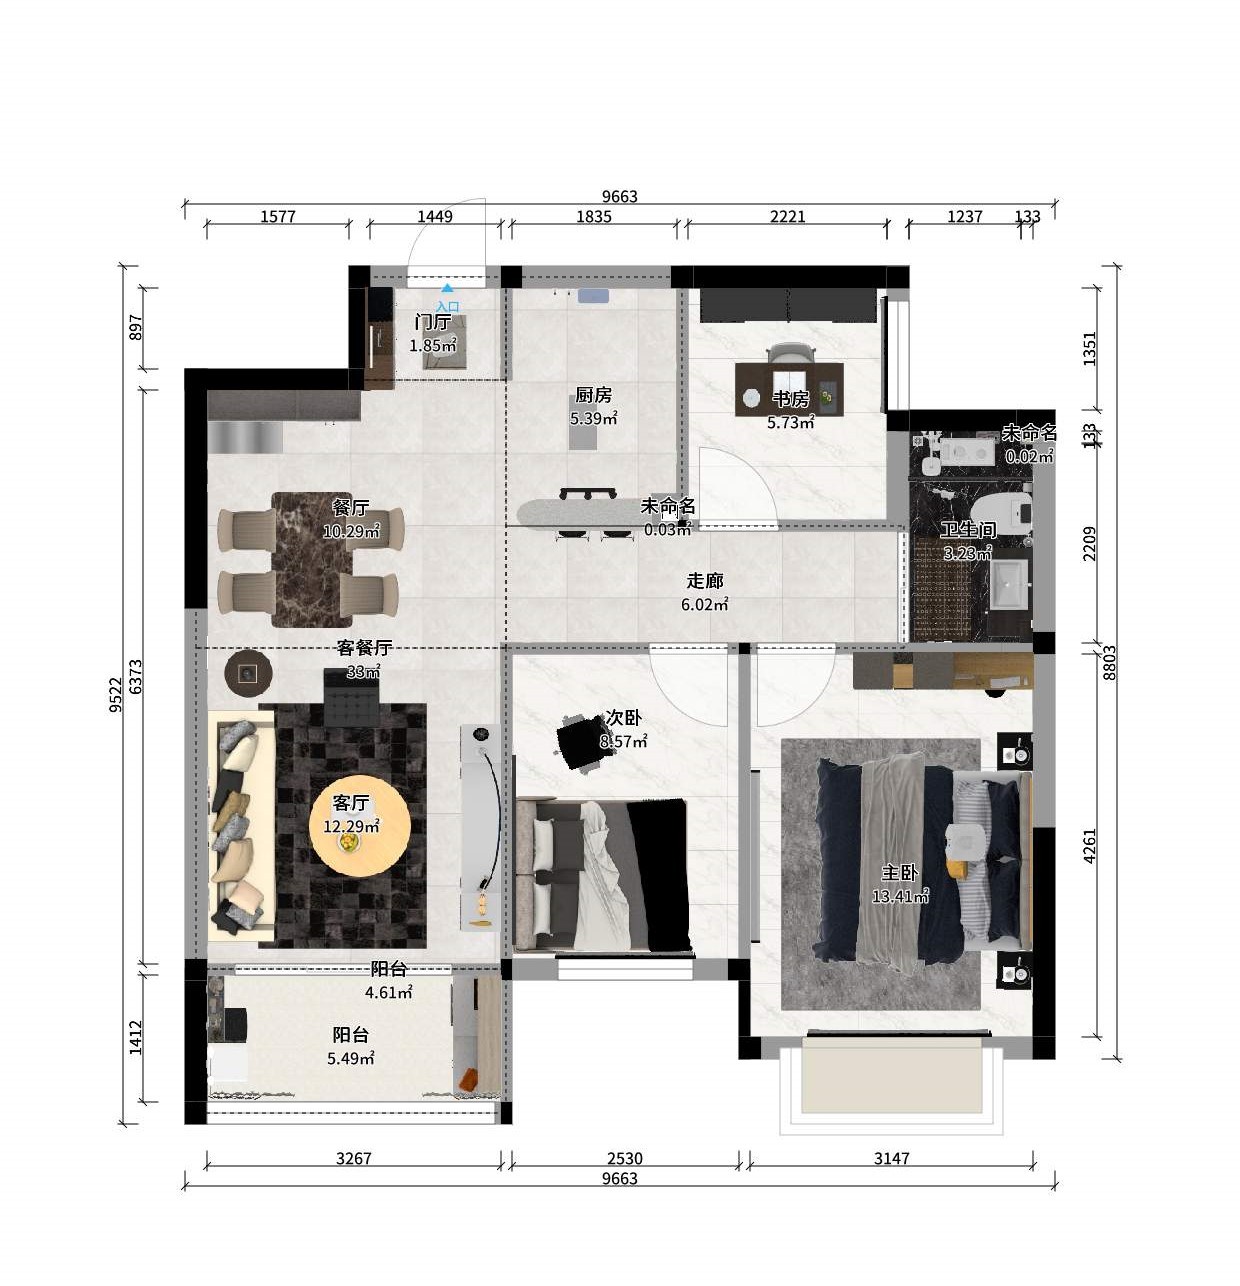 83现代三房装修效果图,现代简约-简单爱装修案例效果图-美广网